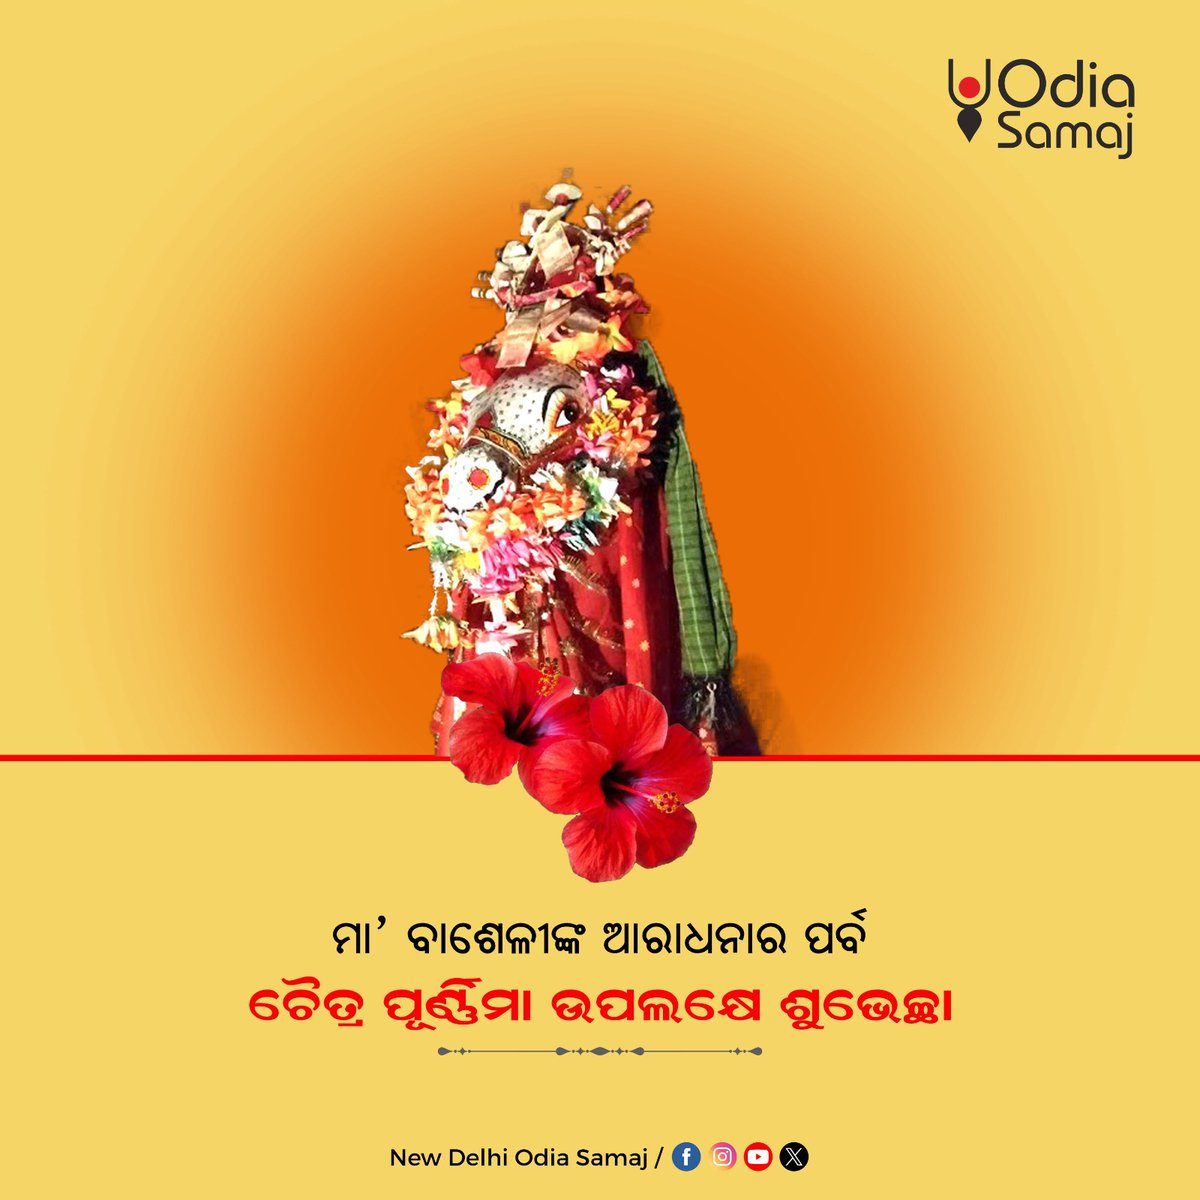 ନିରାକାର ଅଙ୍ଗୁ ଏ ବାଶେଳୀ ଅଟେ ଜାଣ
ଏହାଙ୍କୁ ପୂଜିଲେ ପାଇ ବଇକୁଣ୍ଠ ସ୍ଥାନ

ମା' ବାଶେଳୀଙ୍କ ଆରାଧନାର ପର୍ବ ଚୈତ୍ର ପୂର୍ଣ୍ଣିମା ଉପଲକ୍ଷେ ଶୁଭେଚ୍ଛା!🙏🌸
#ChaitraPurnima #ଚୈତ୍ରପୂର୍ଣ୍ଣିମା #OdiaCulture #odiatradition #Odisha #OdiaSamaj